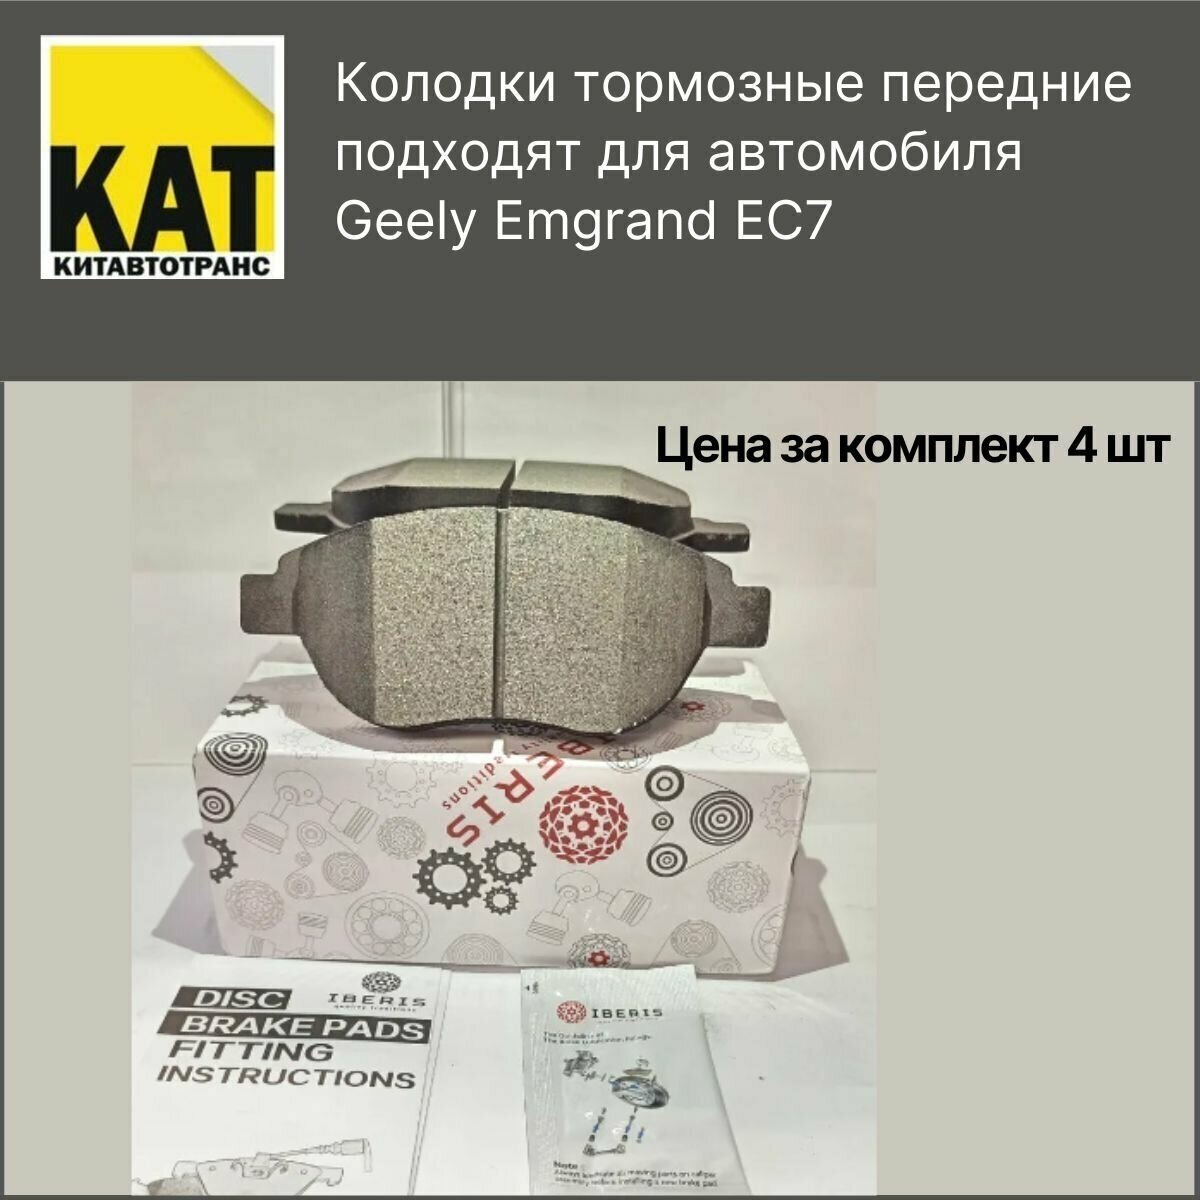 Колодки Джили Эмгранд ЕС7 (Geely Emgrand EC7) тормозные передние IBERIS